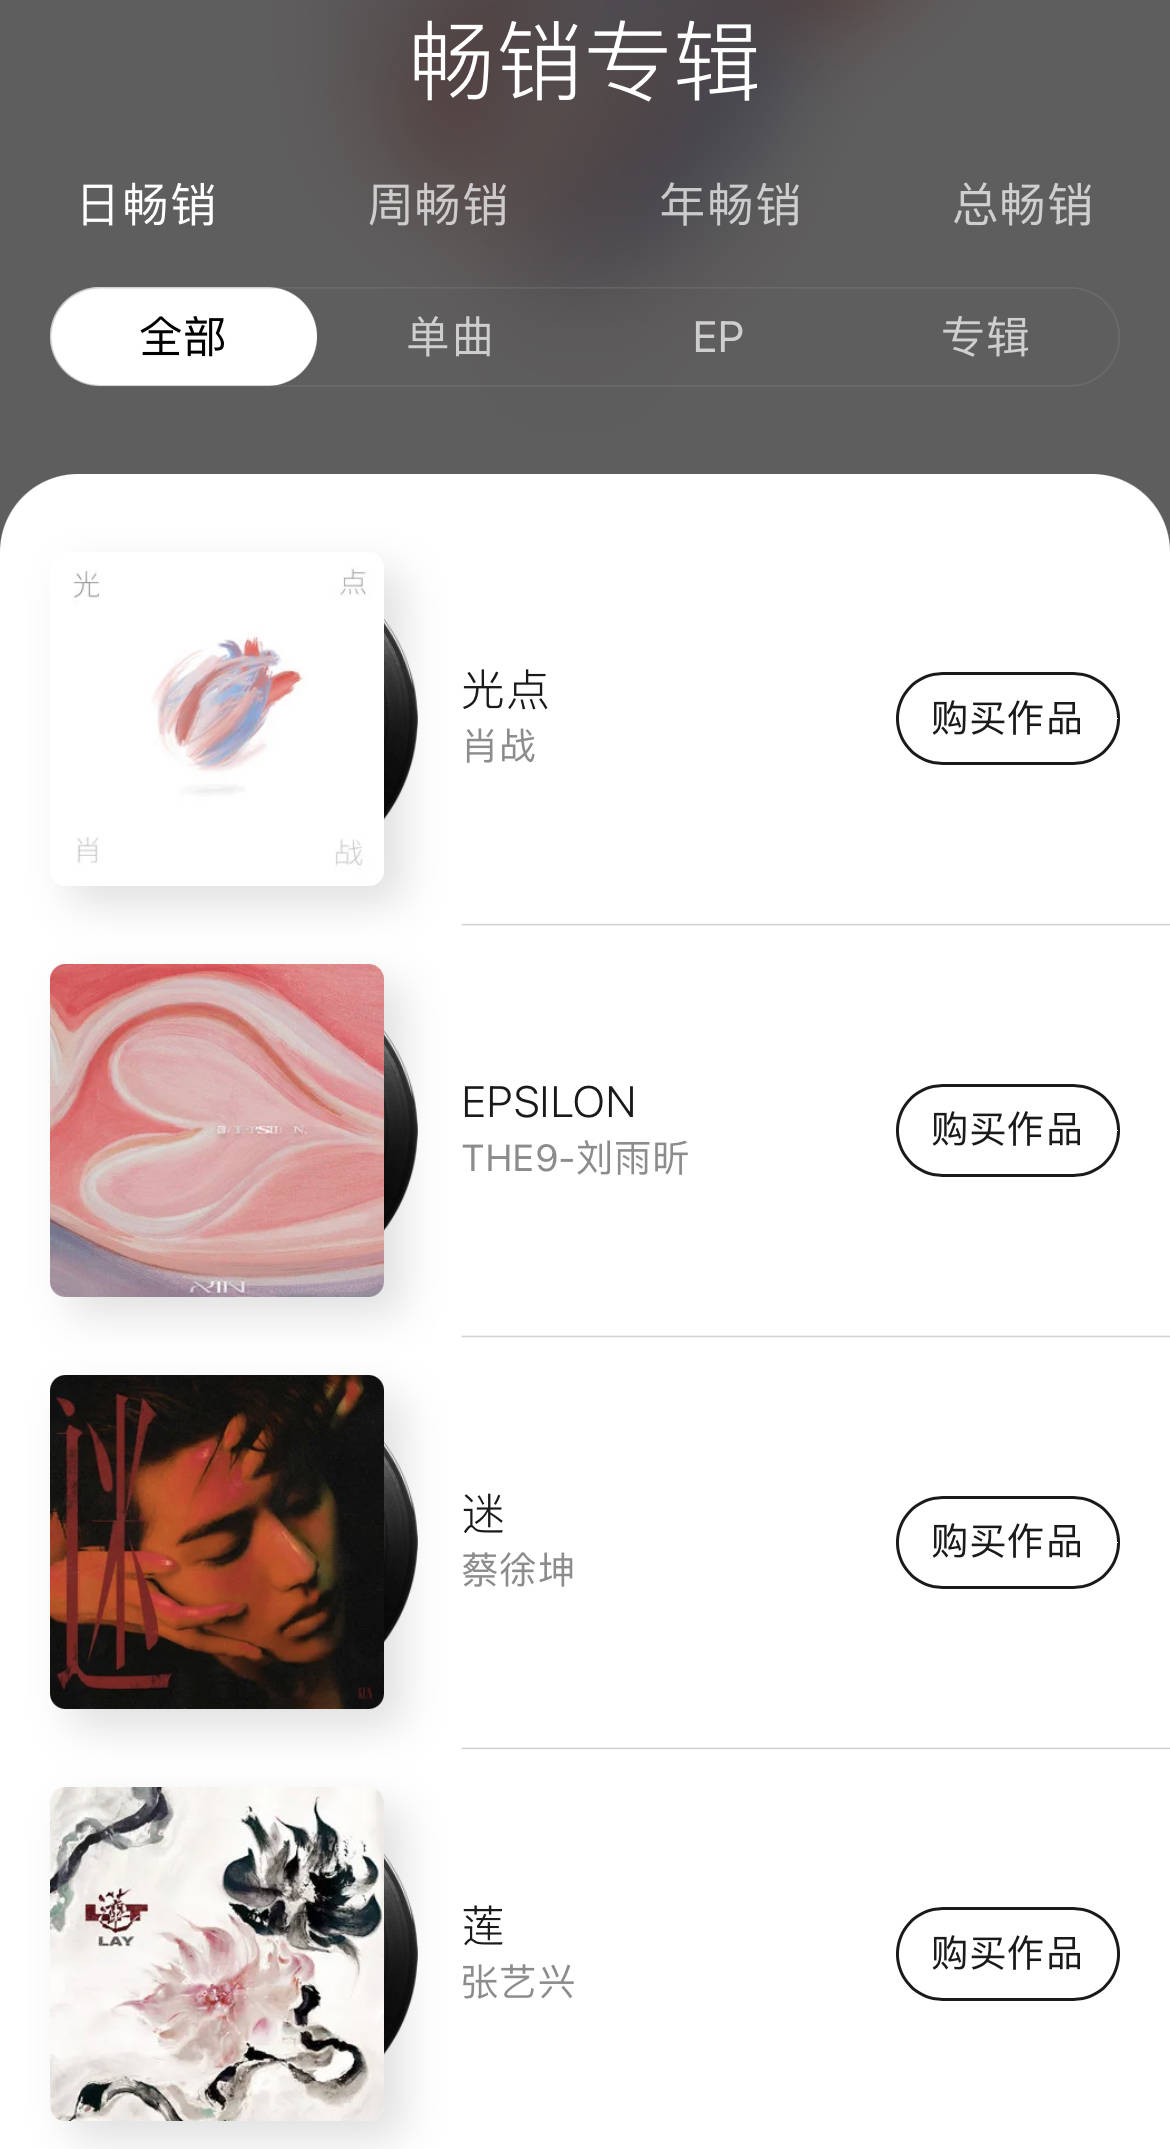 微博抖音快手等多个平台取消明星排行榜,QQ音乐限购专辑